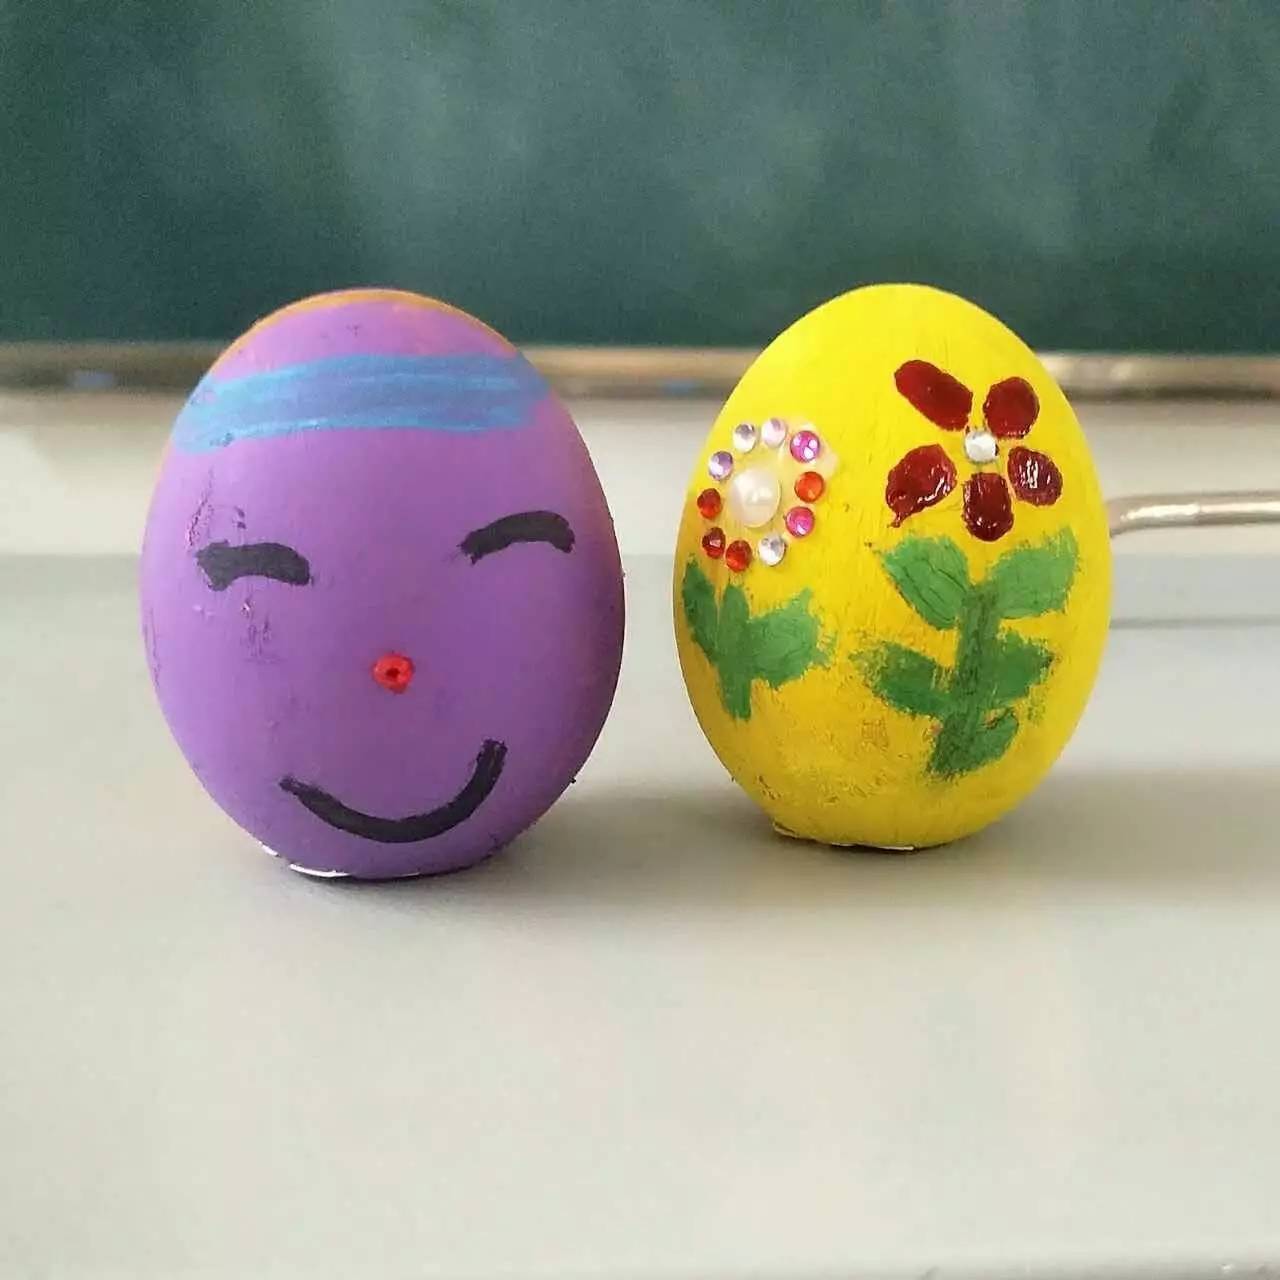 【创意】有一个班上课时间,在鸡蛋上作画?厉害了word科技!